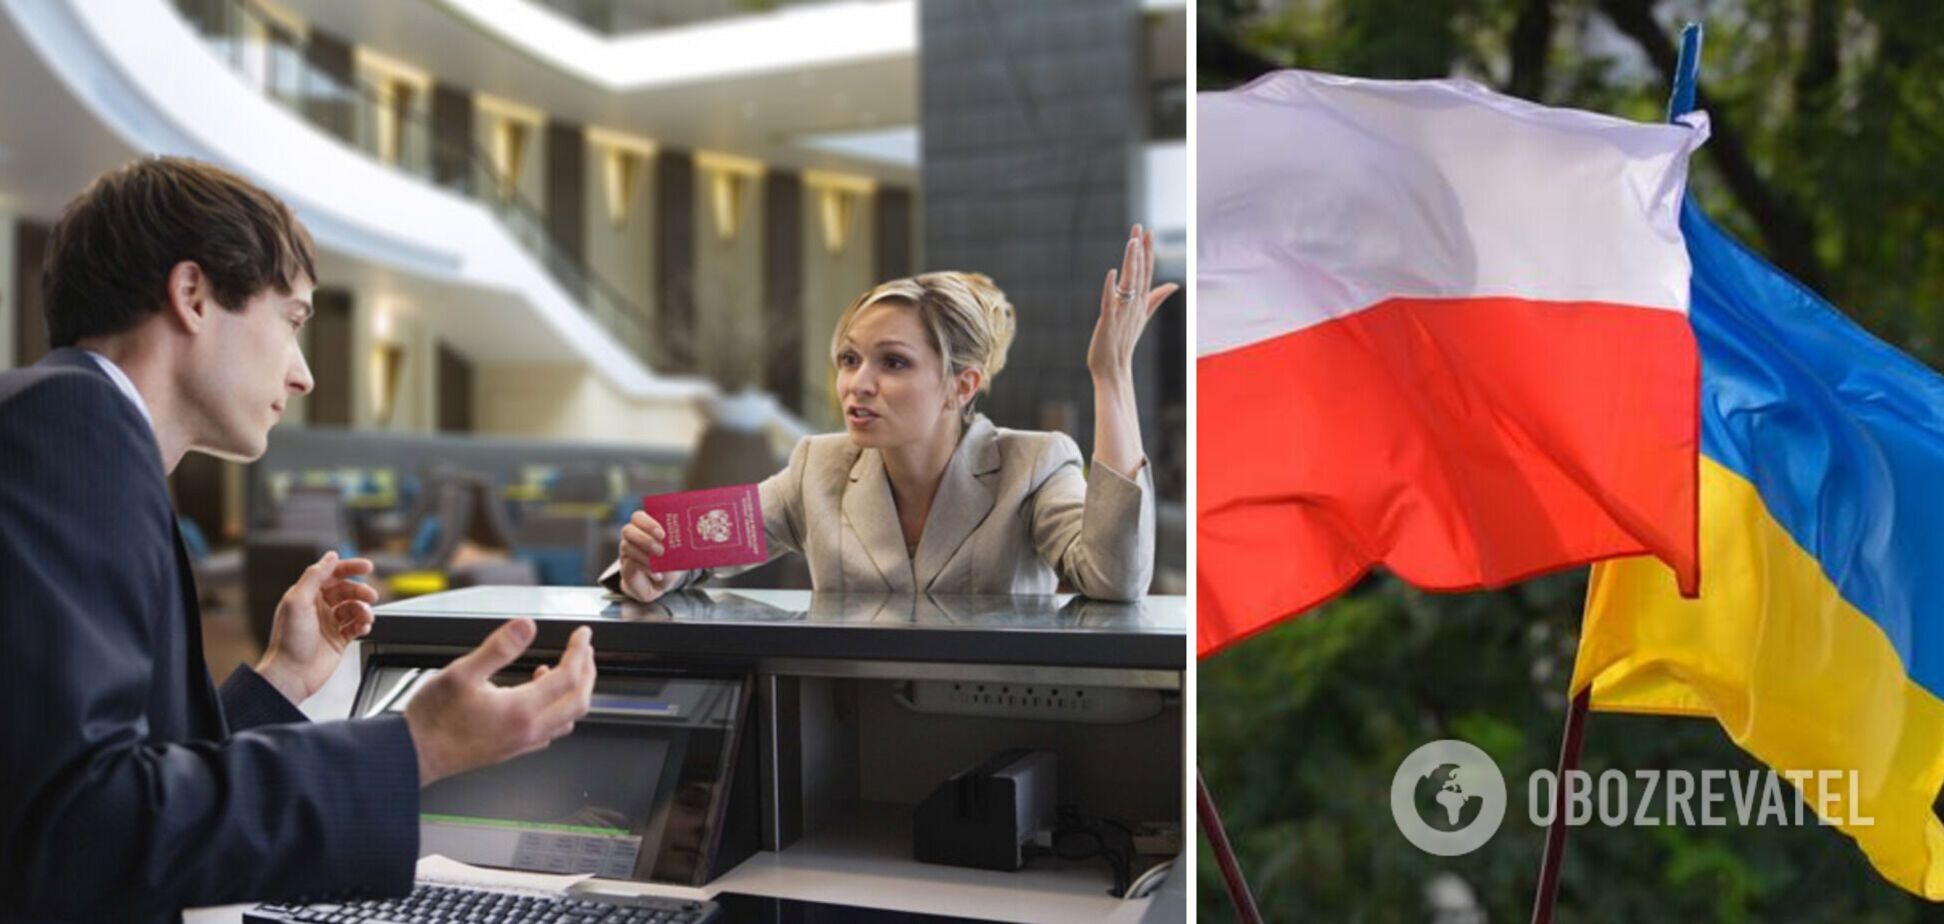 'Вибачте, ми не приймаємо громадян Росії': у Варшаві готель відмовився поселяти російського туриста